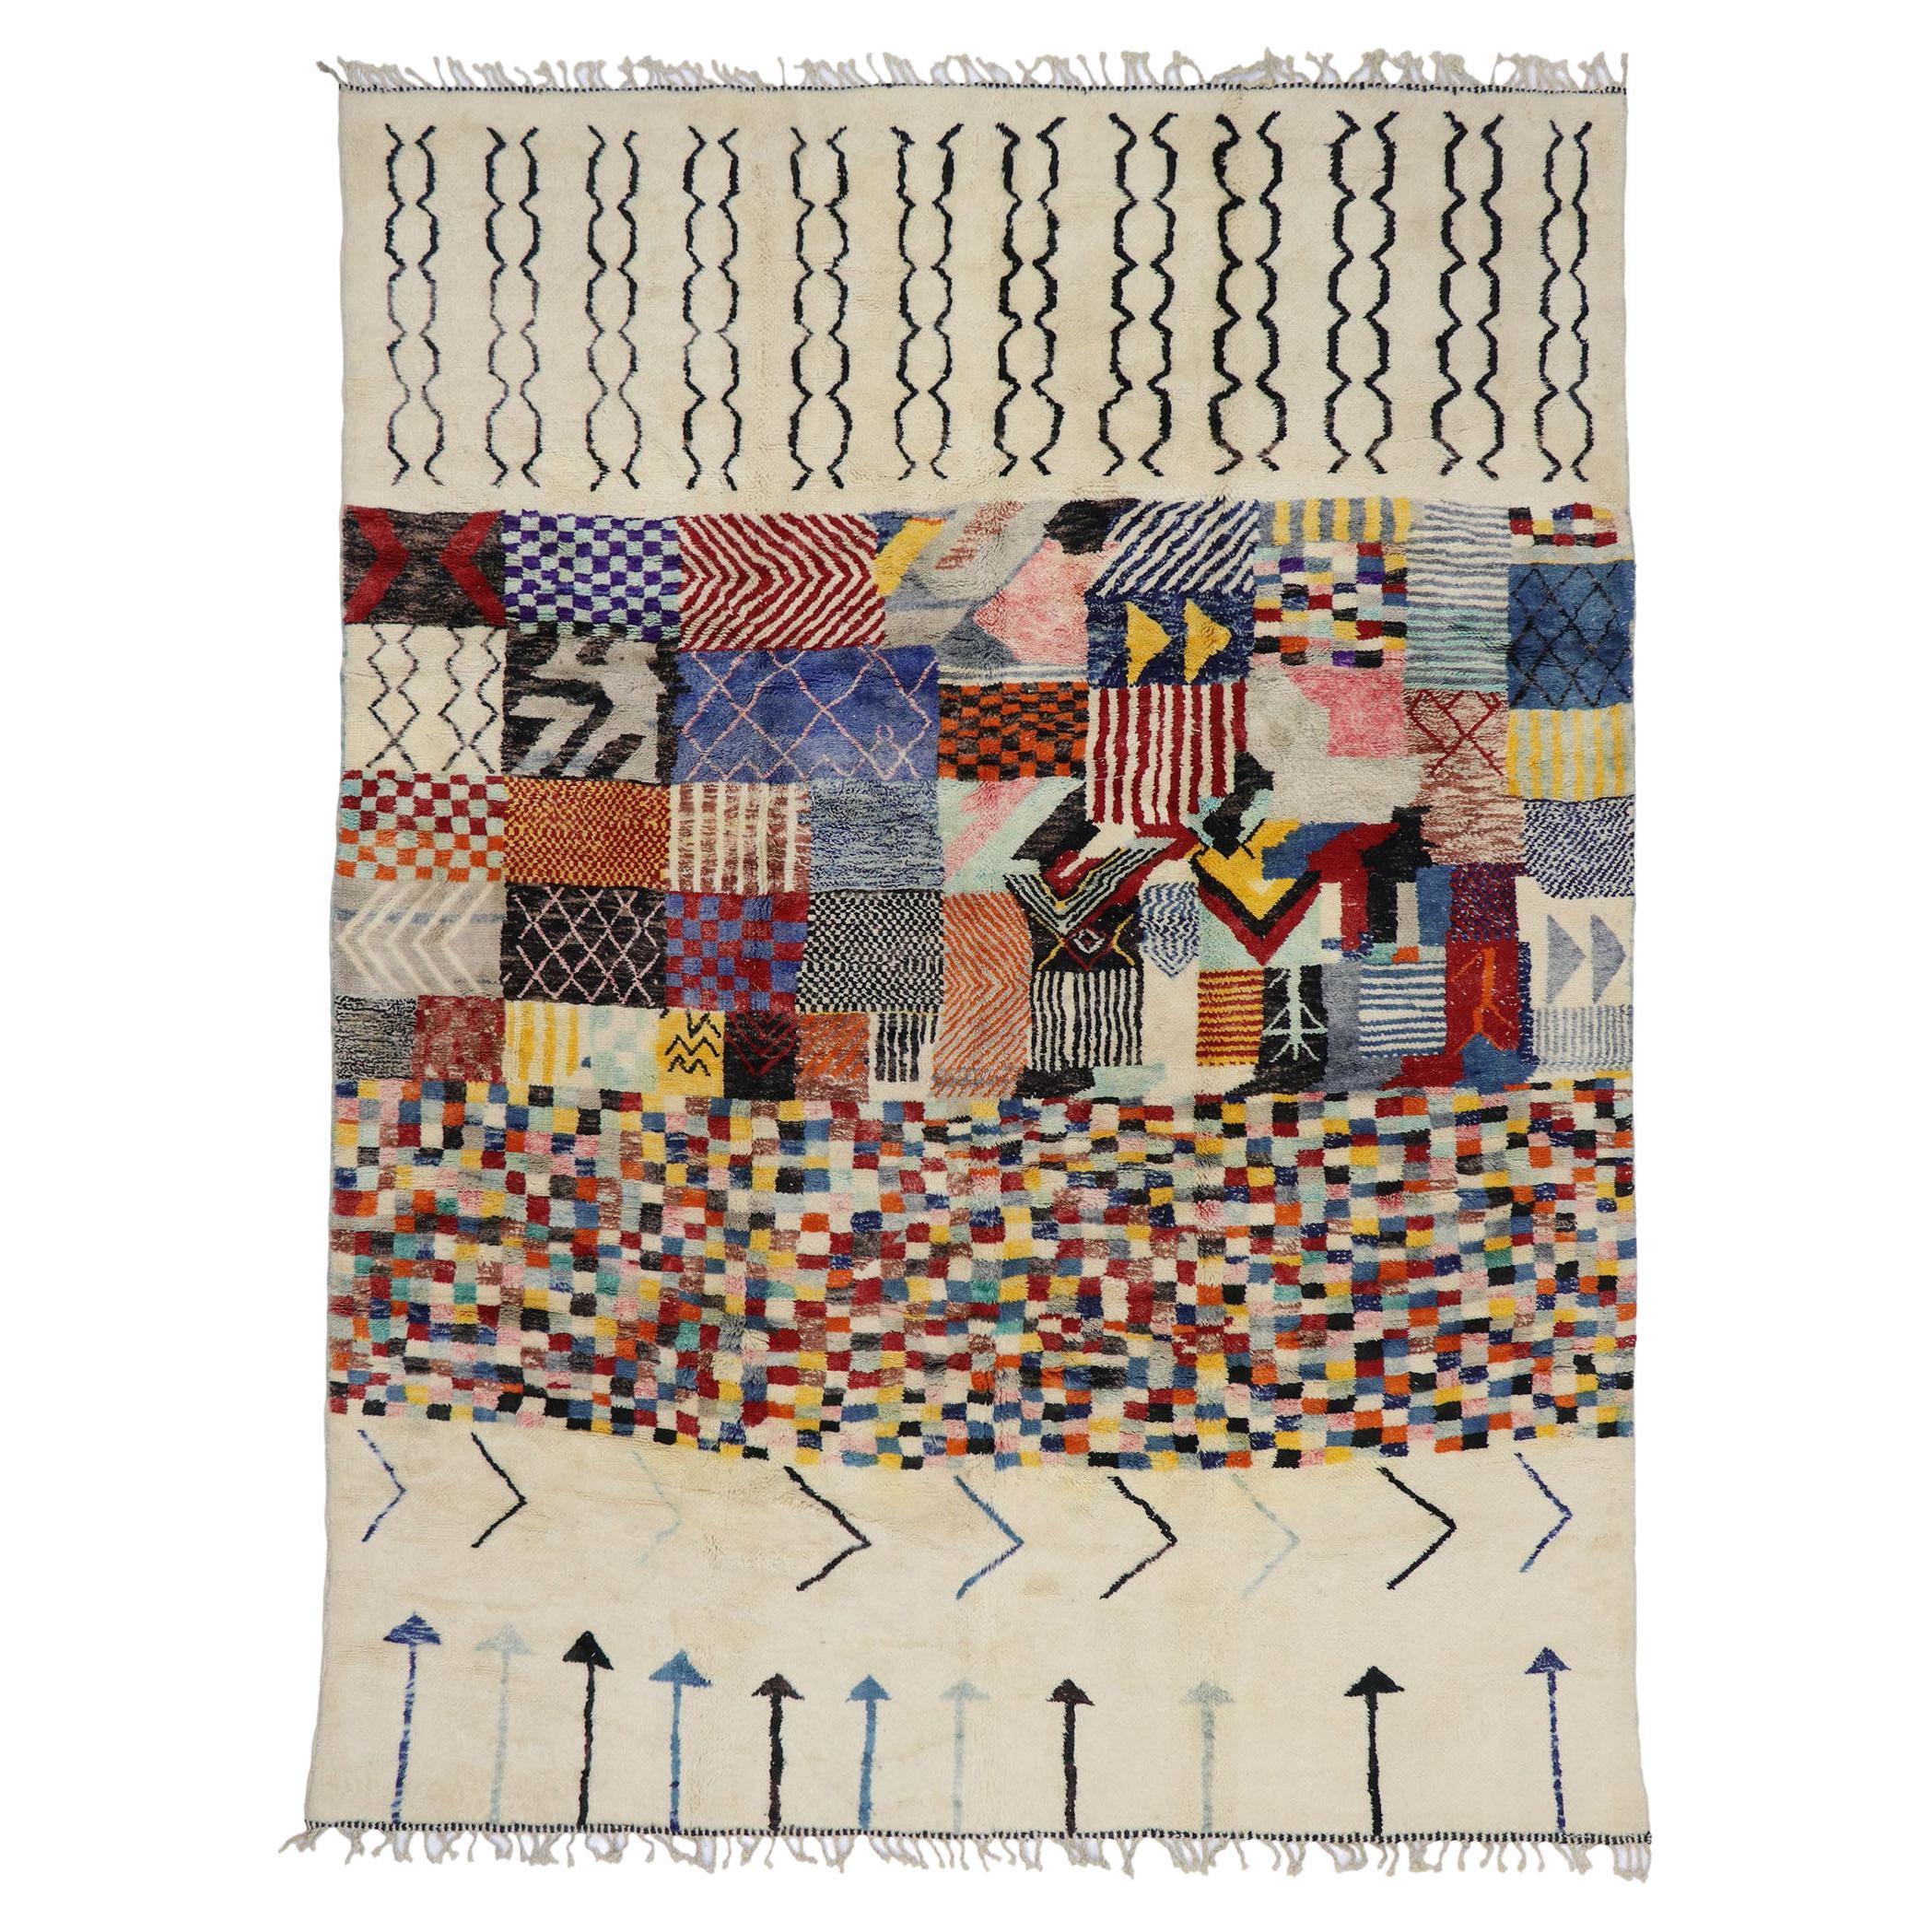 New Color Block Moroccan Rug Inspired by Gunta Stölzl